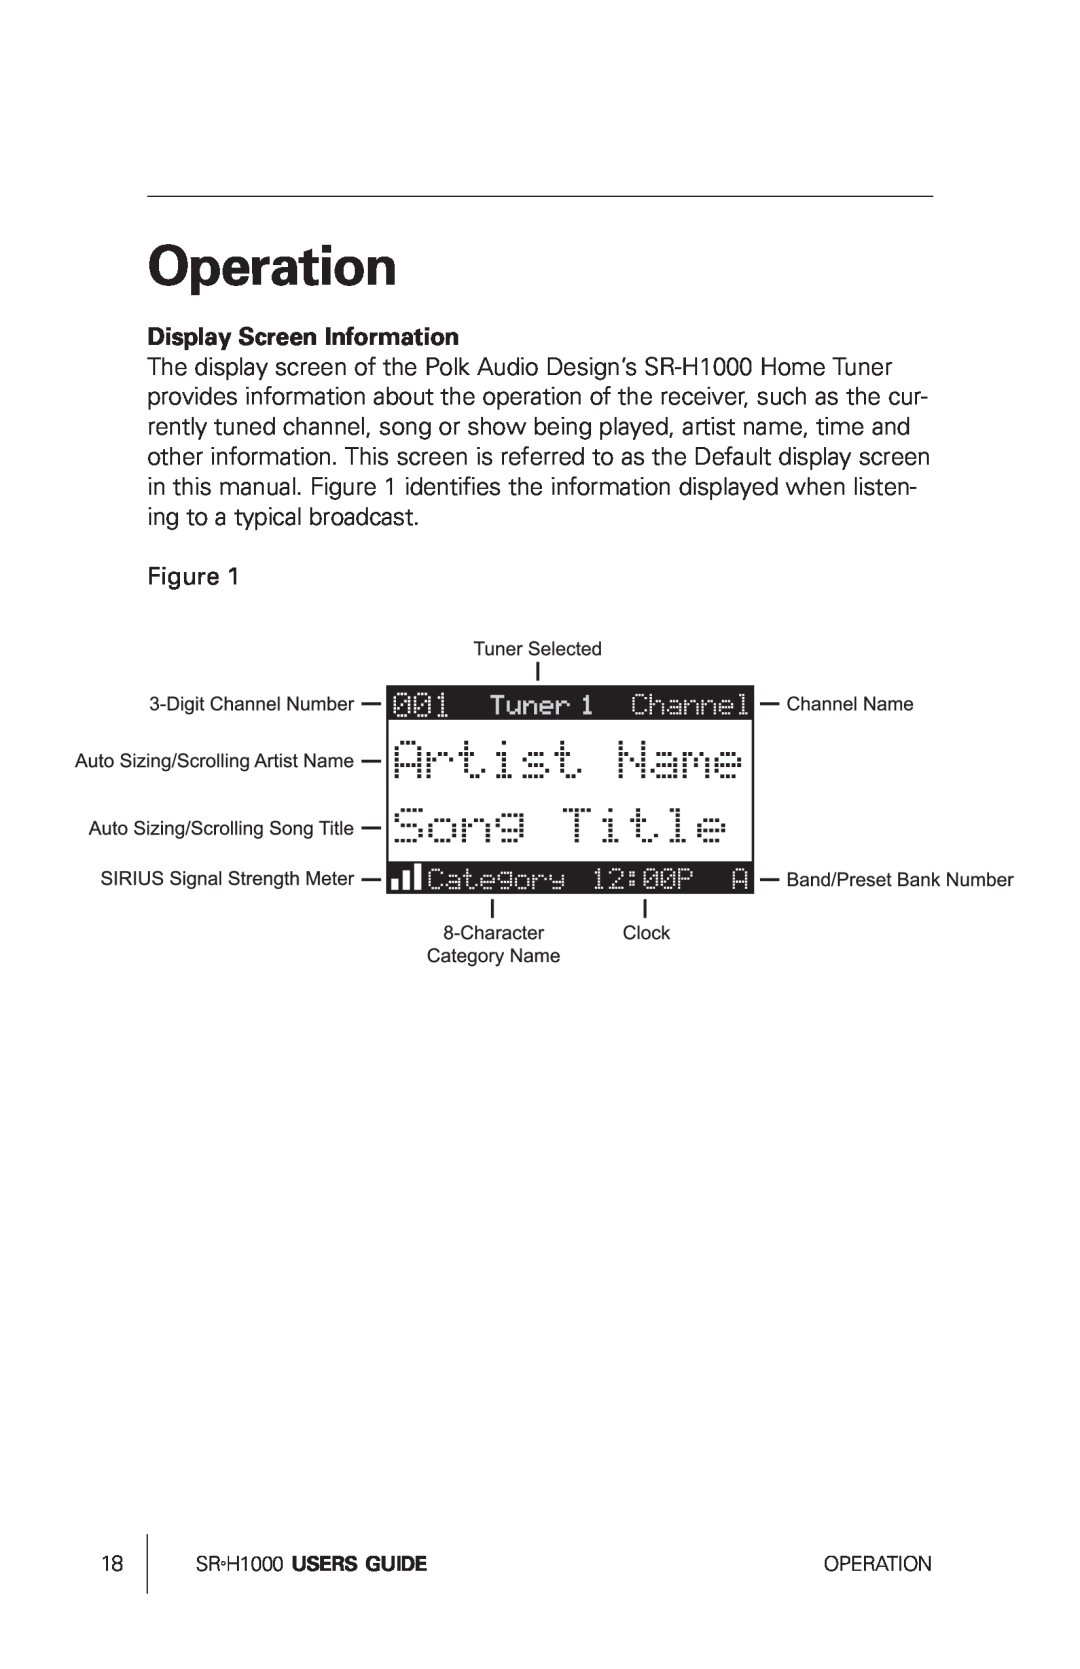 Sirius Satellite Radio SRH1000 manual Operation, Display Screen Information 